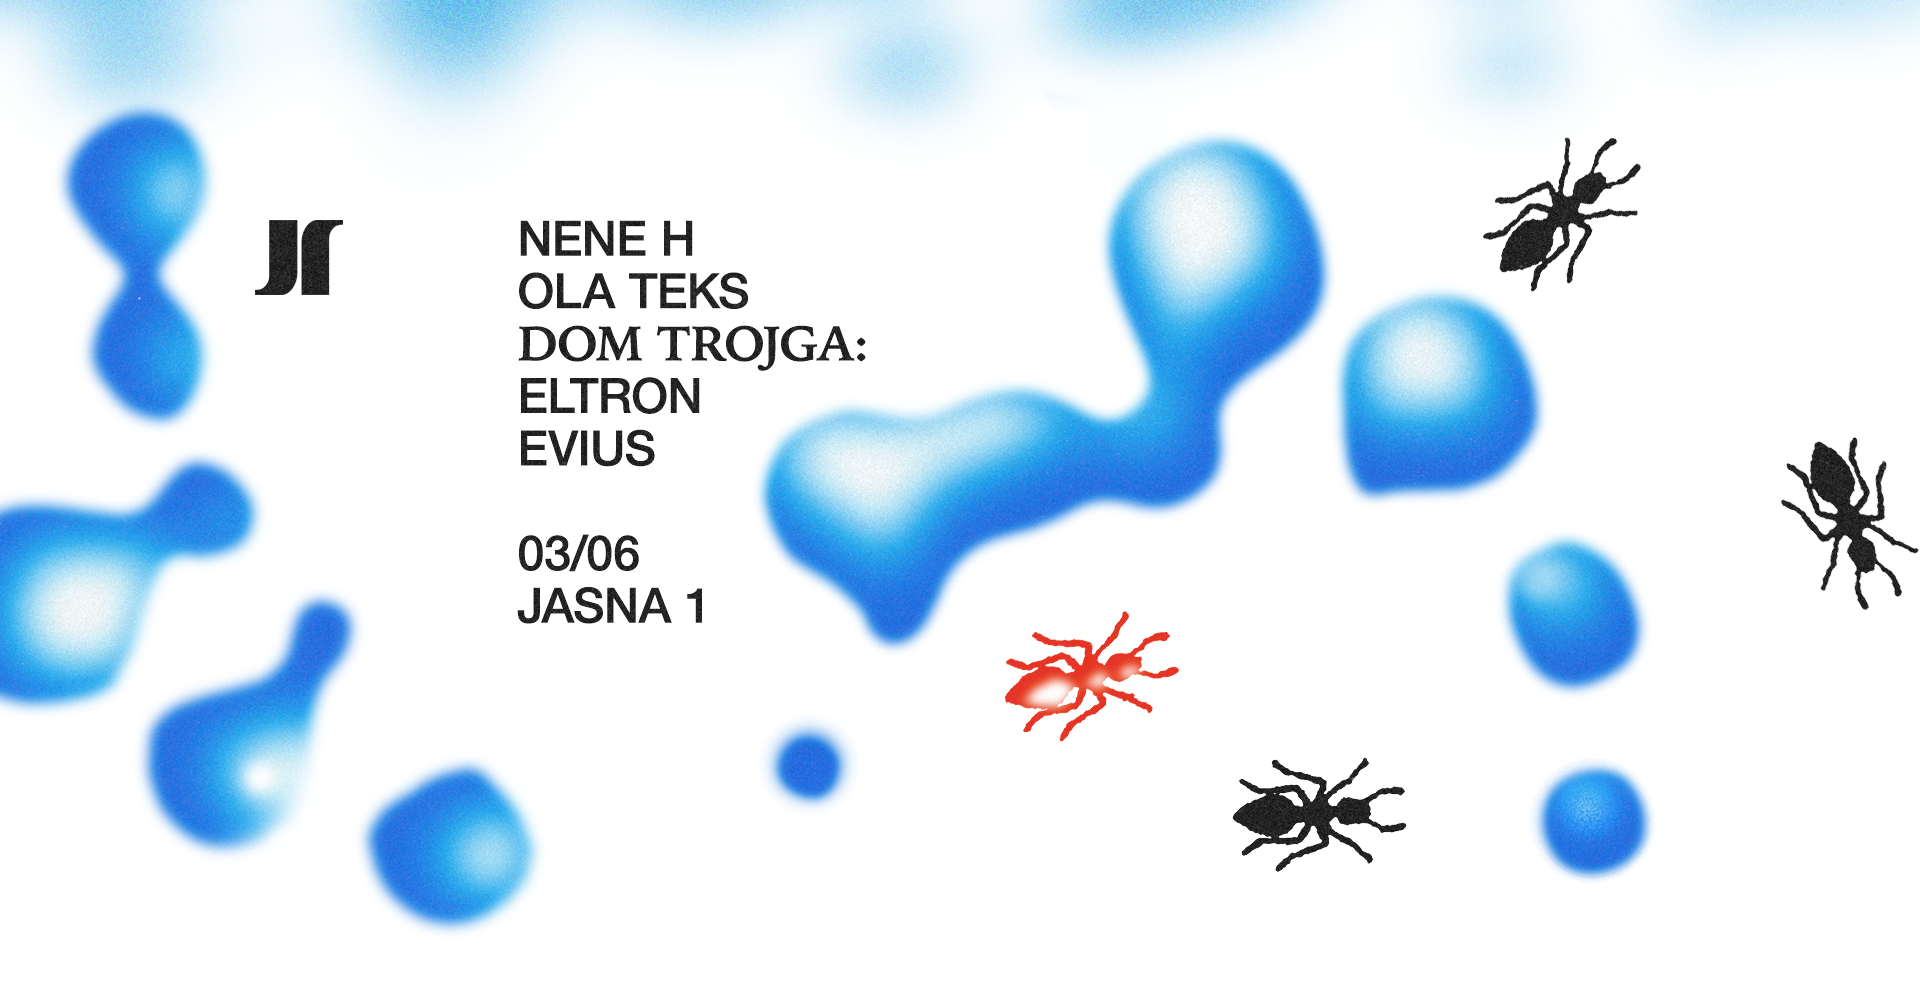 J1 - Nene H, Ola Teks / Dom Trojga: Eltron, Evius - Página frontal